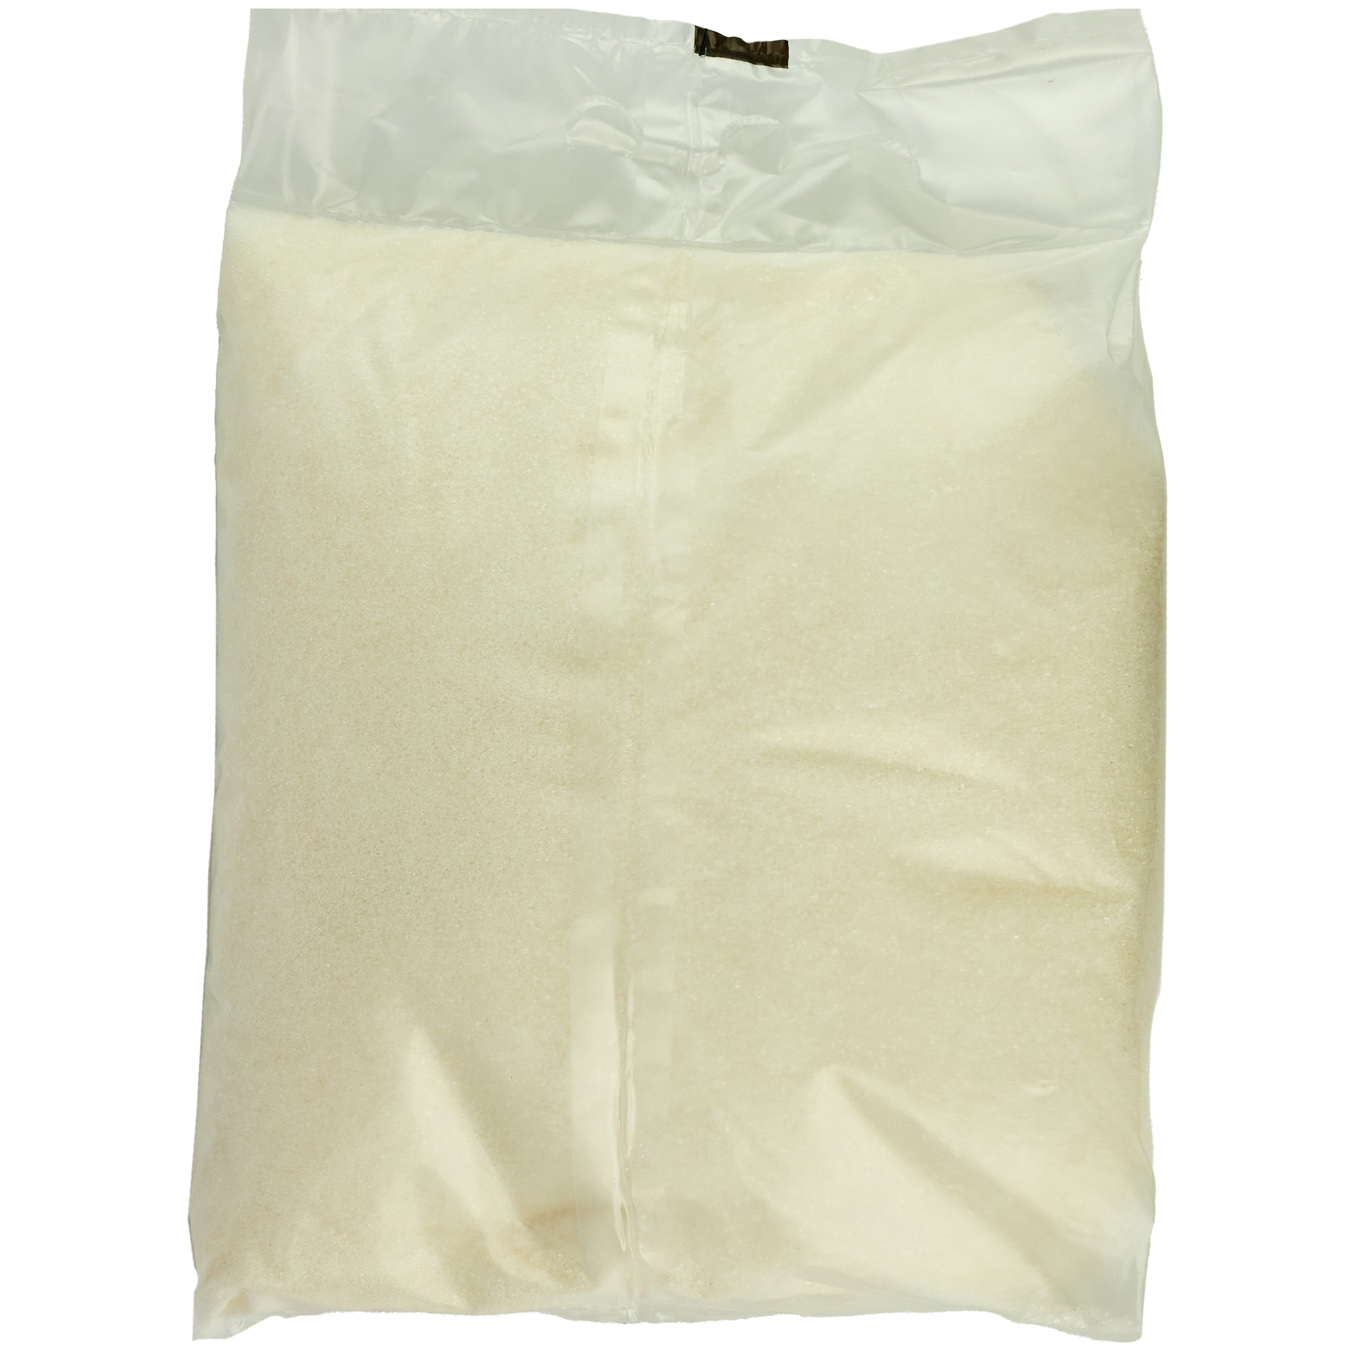 Sarkara Product White Crystall Sugar 3kg 2